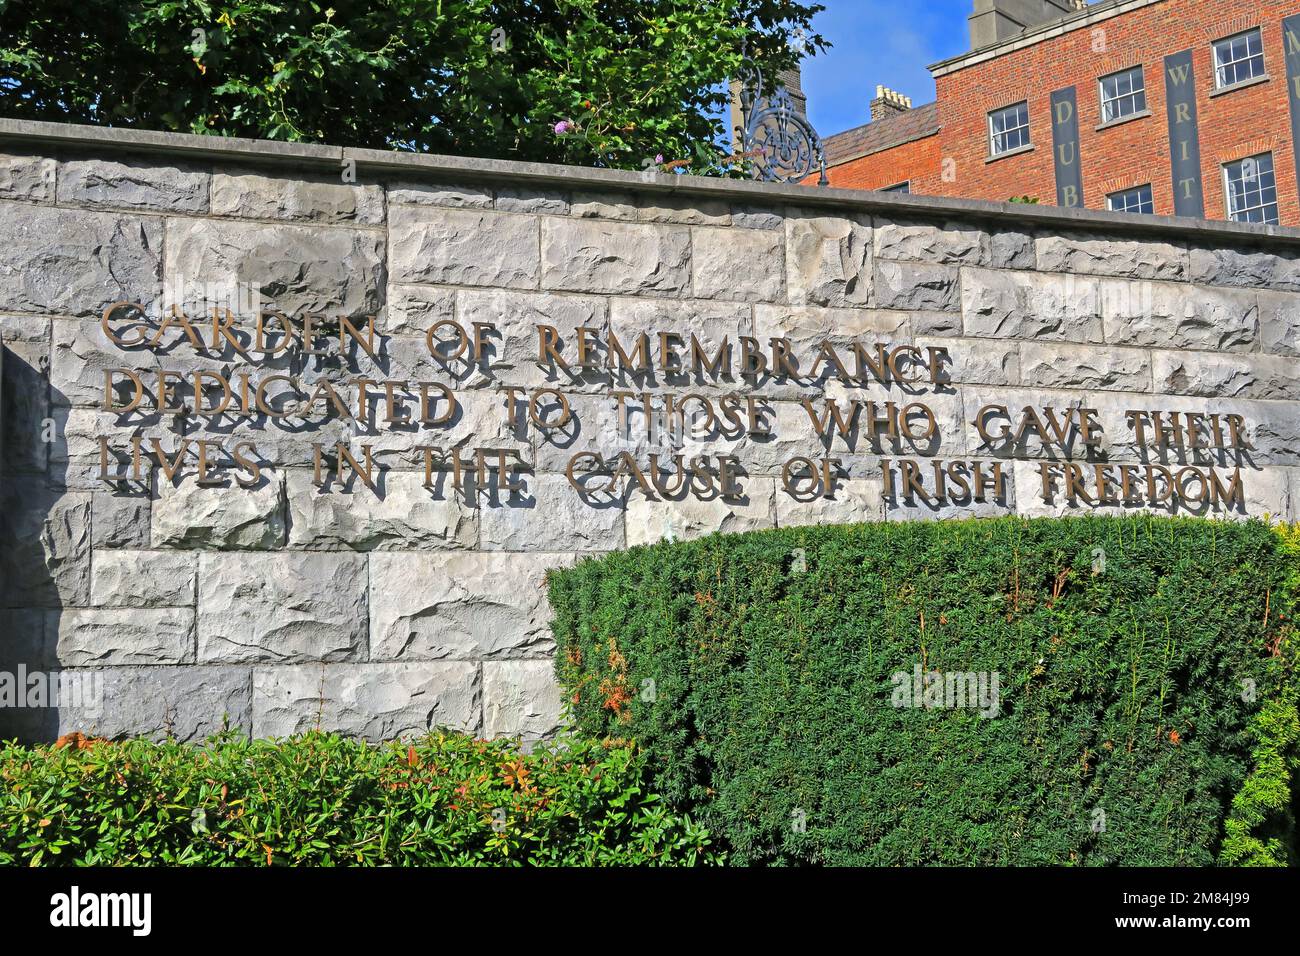 Garten der Erinnerung, gewidmet denen, die ihr Leben gaben, für die irische Freiheit, Parnell Square N, Rotunda, Dublin, D01 T3V8, Eire, Irland Stockfoto